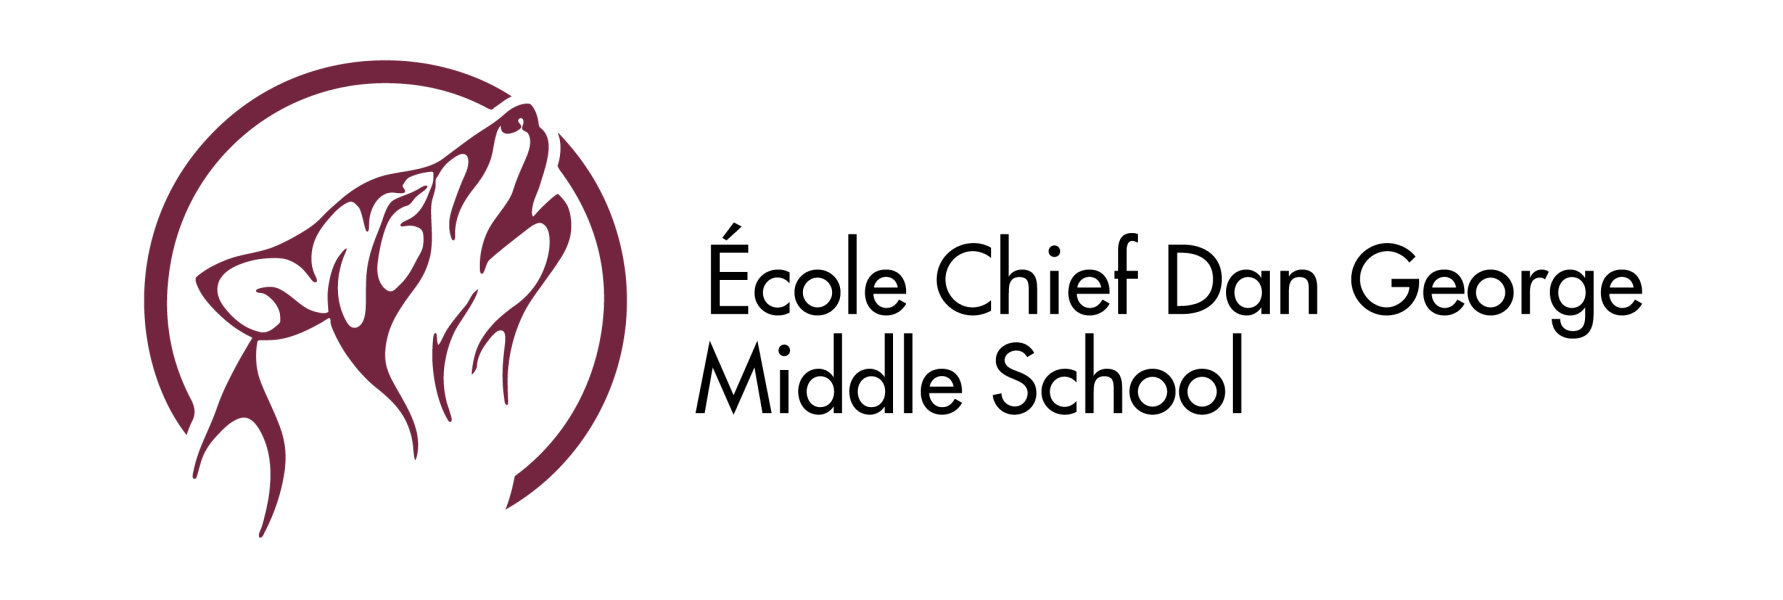 Chief Dan George Middle School Logo